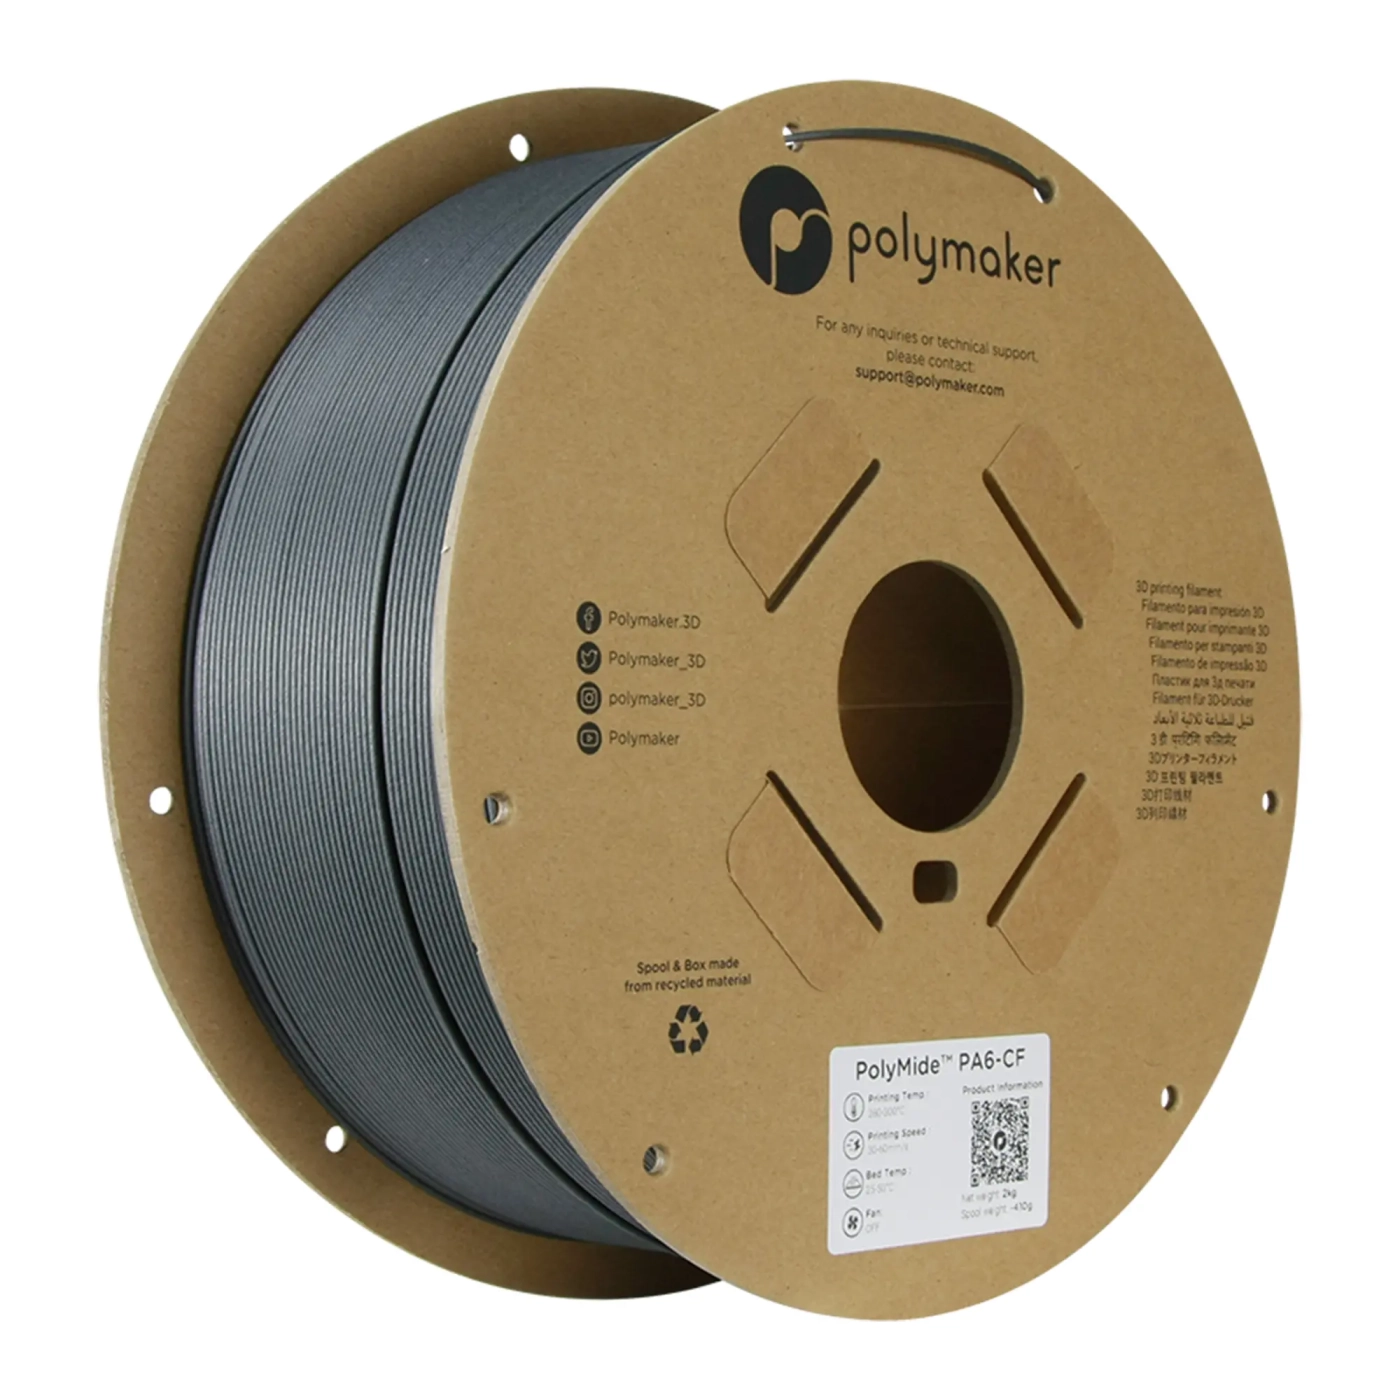 Купить PolyMide PA6-CF Filament (пластик) для 3D принтера Polymaker 2кг 1.75мм черный - фото 1